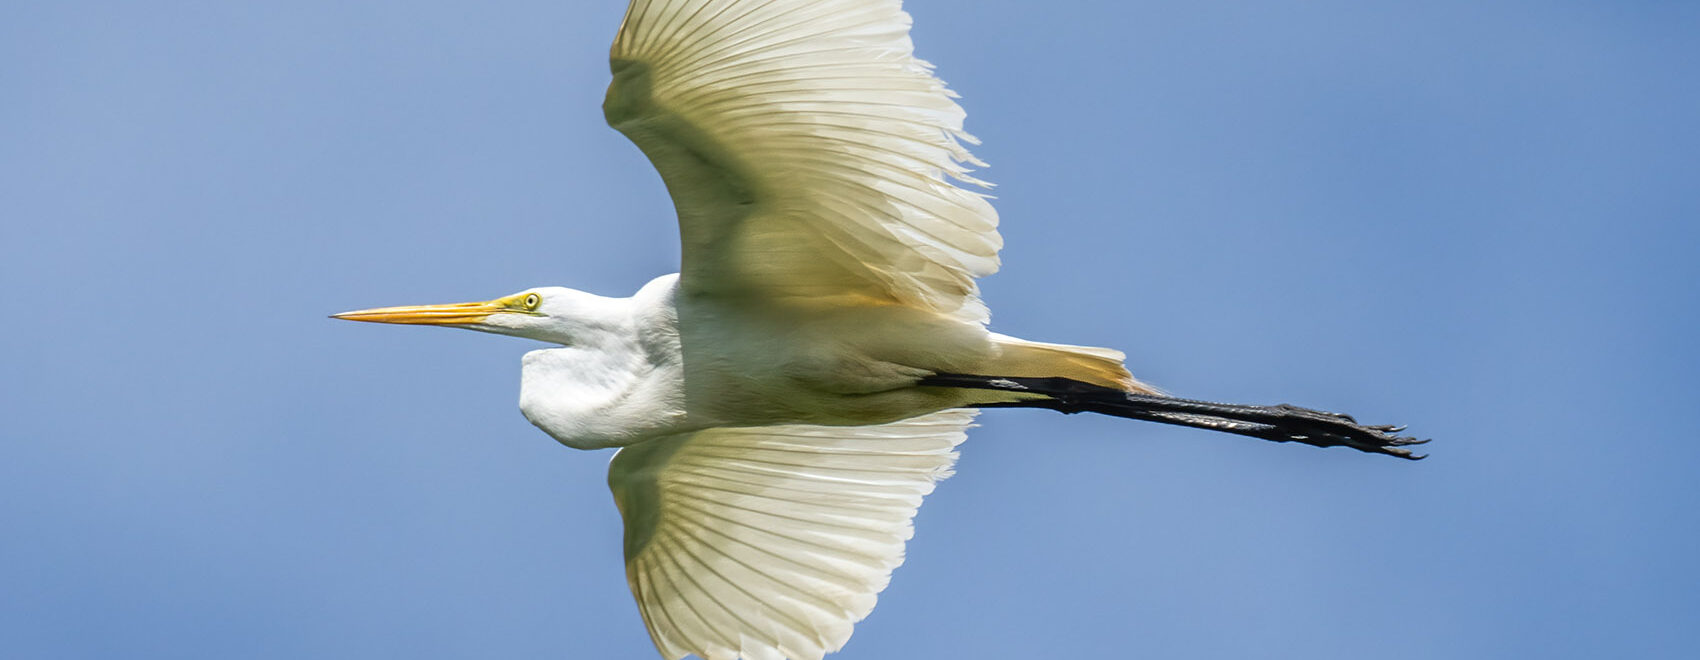 white egret in flight blue sky over Cazan Lake